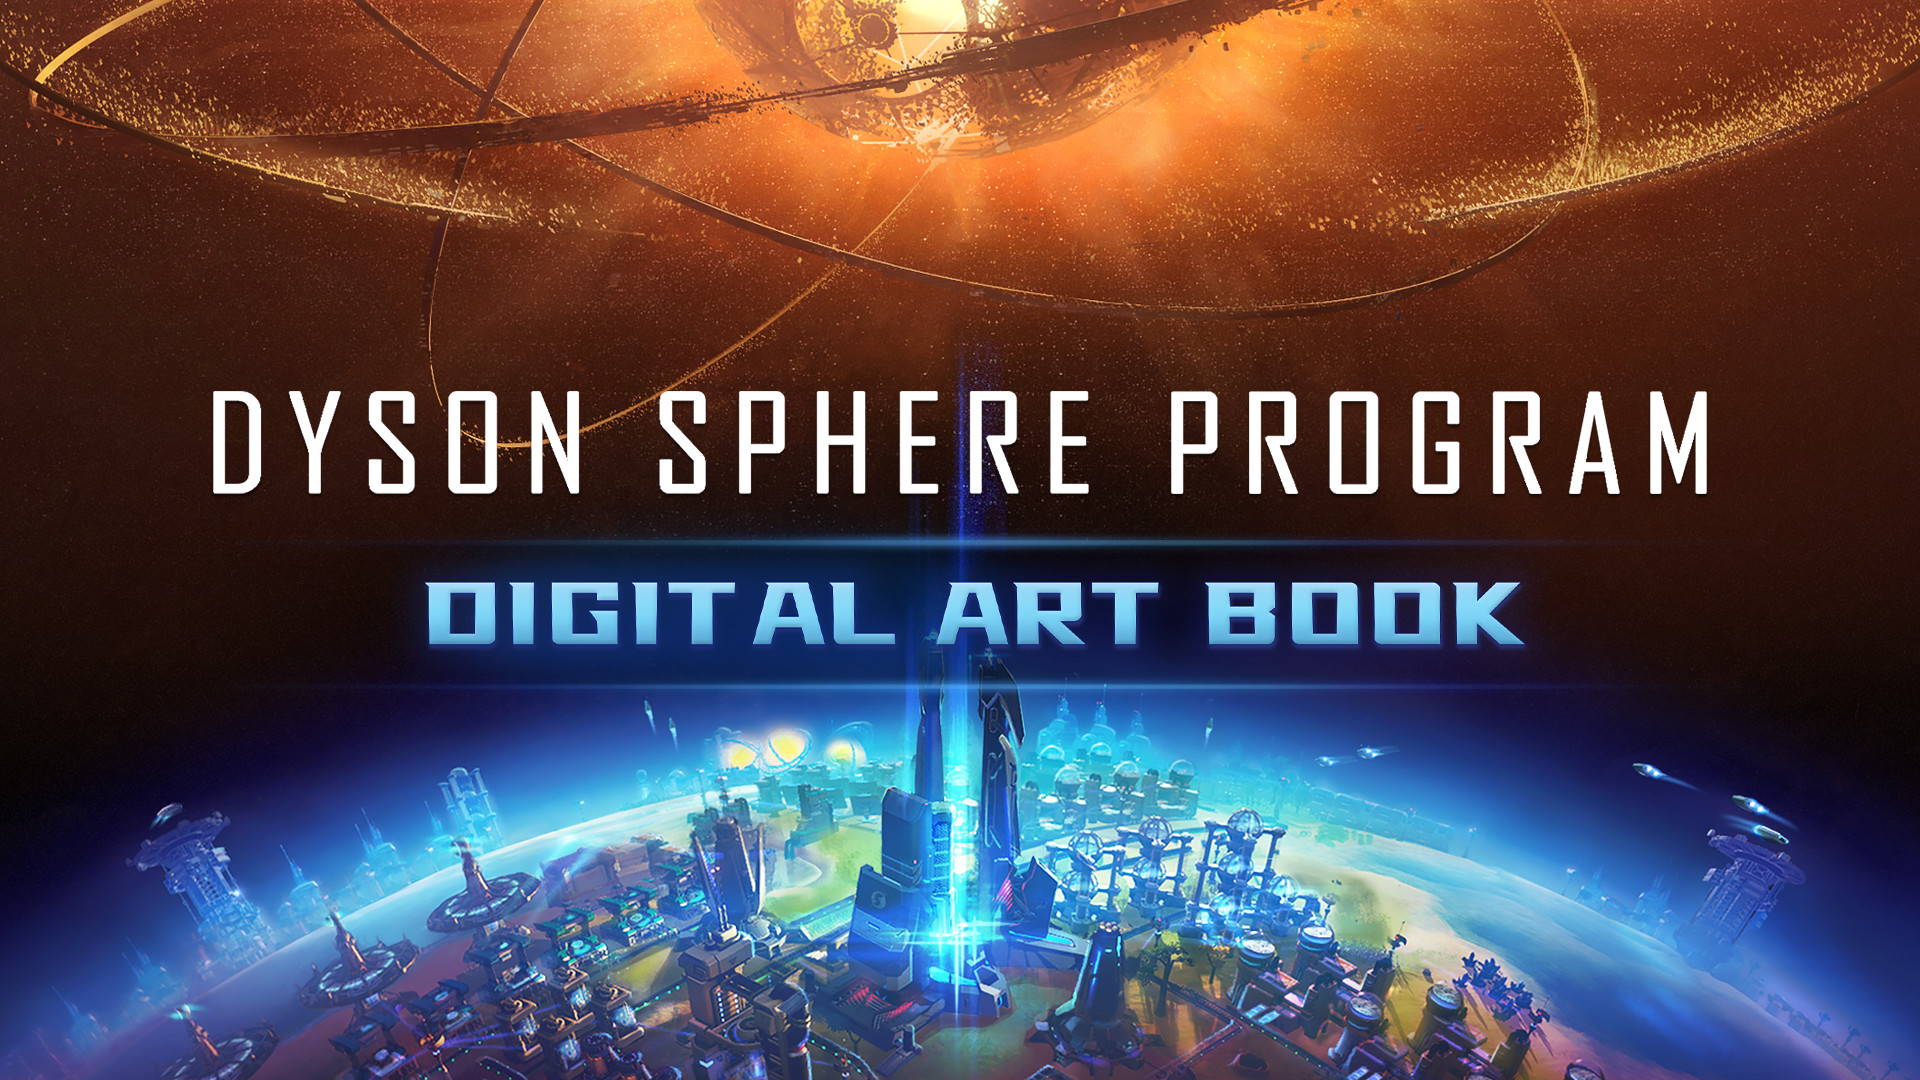 Dyson Sphere Program - Digital Art Book Featured Screenshot #1